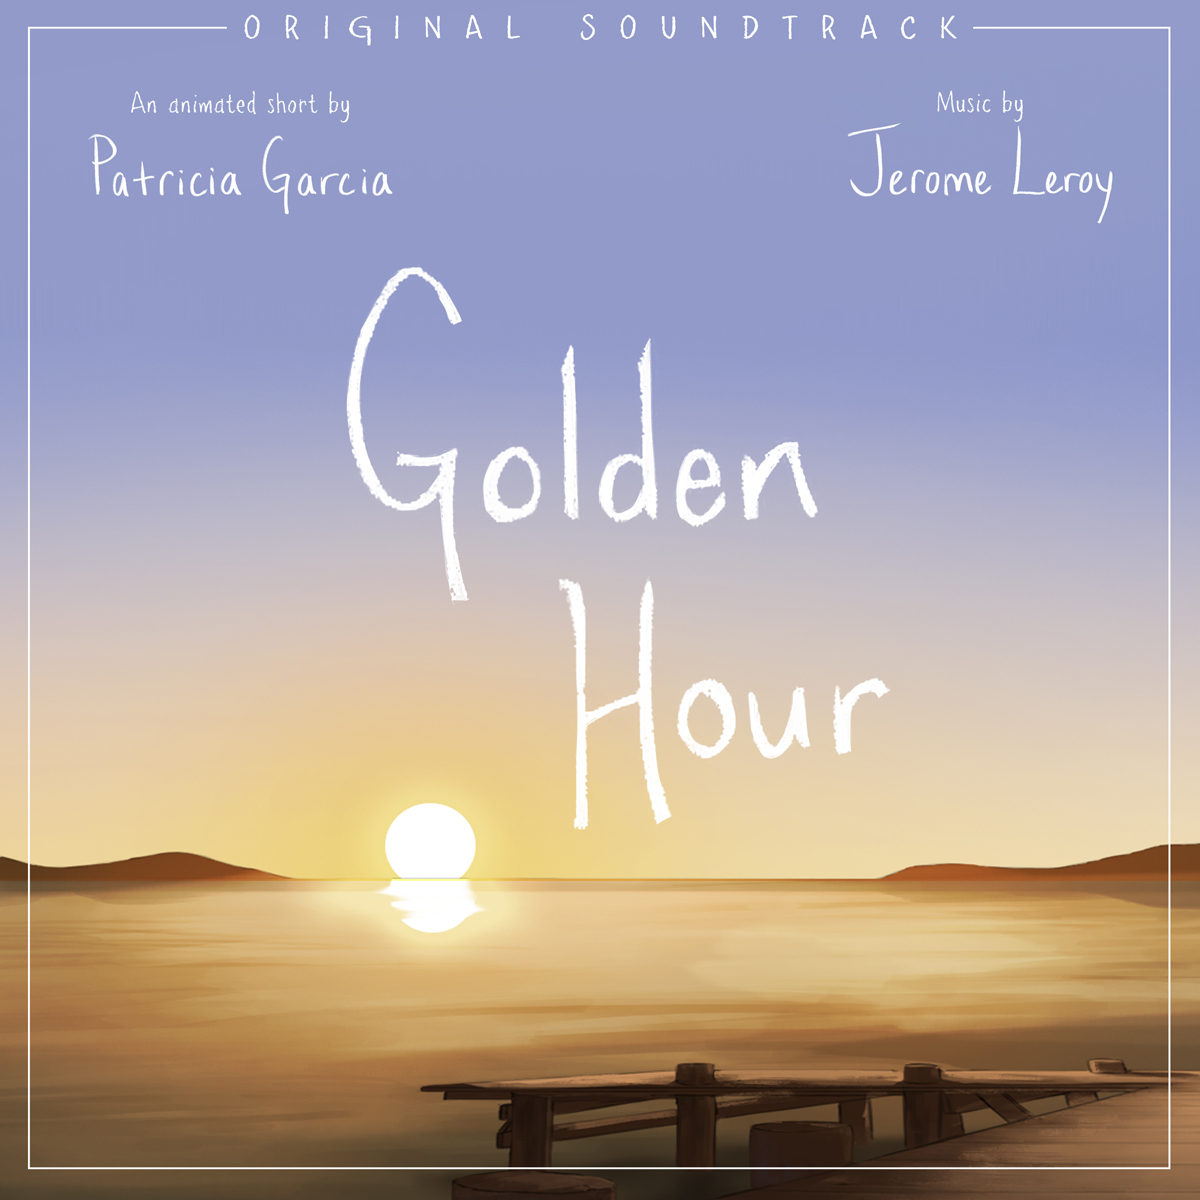 Золотые часы песня. Golden hour jvke. Golden hour песни. Golden hour jvke обложка. Golden hour (Holiday Version).